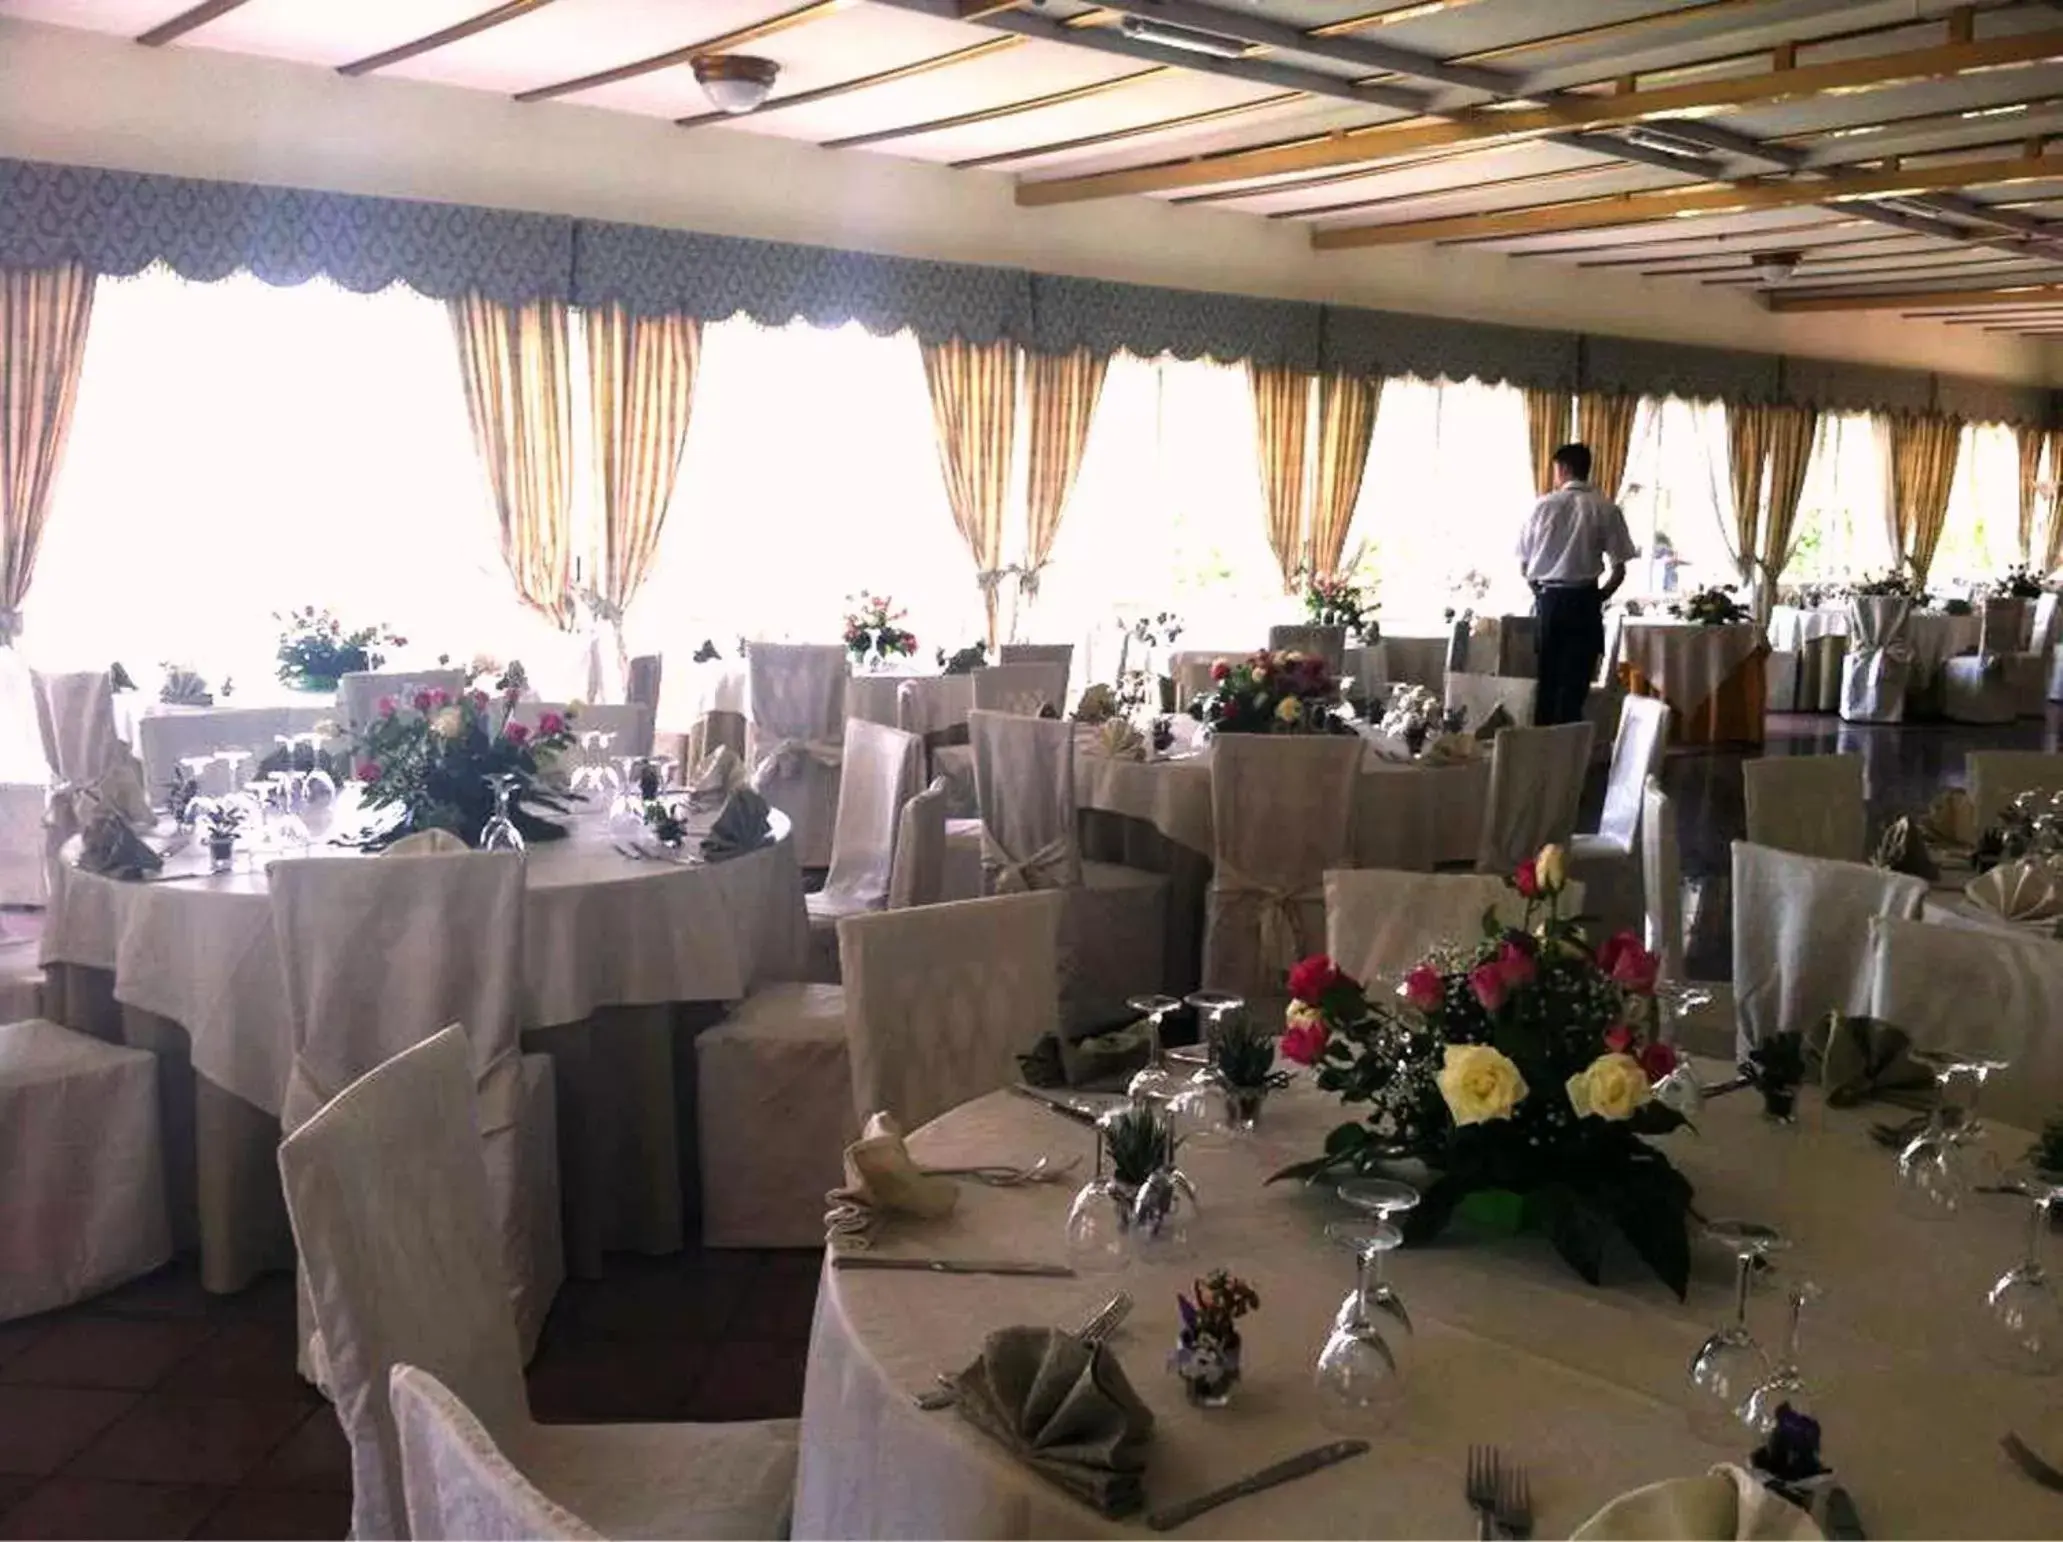 Banquet/Function facilities, Banquet Facilities in Hotel Parco Dei Principi